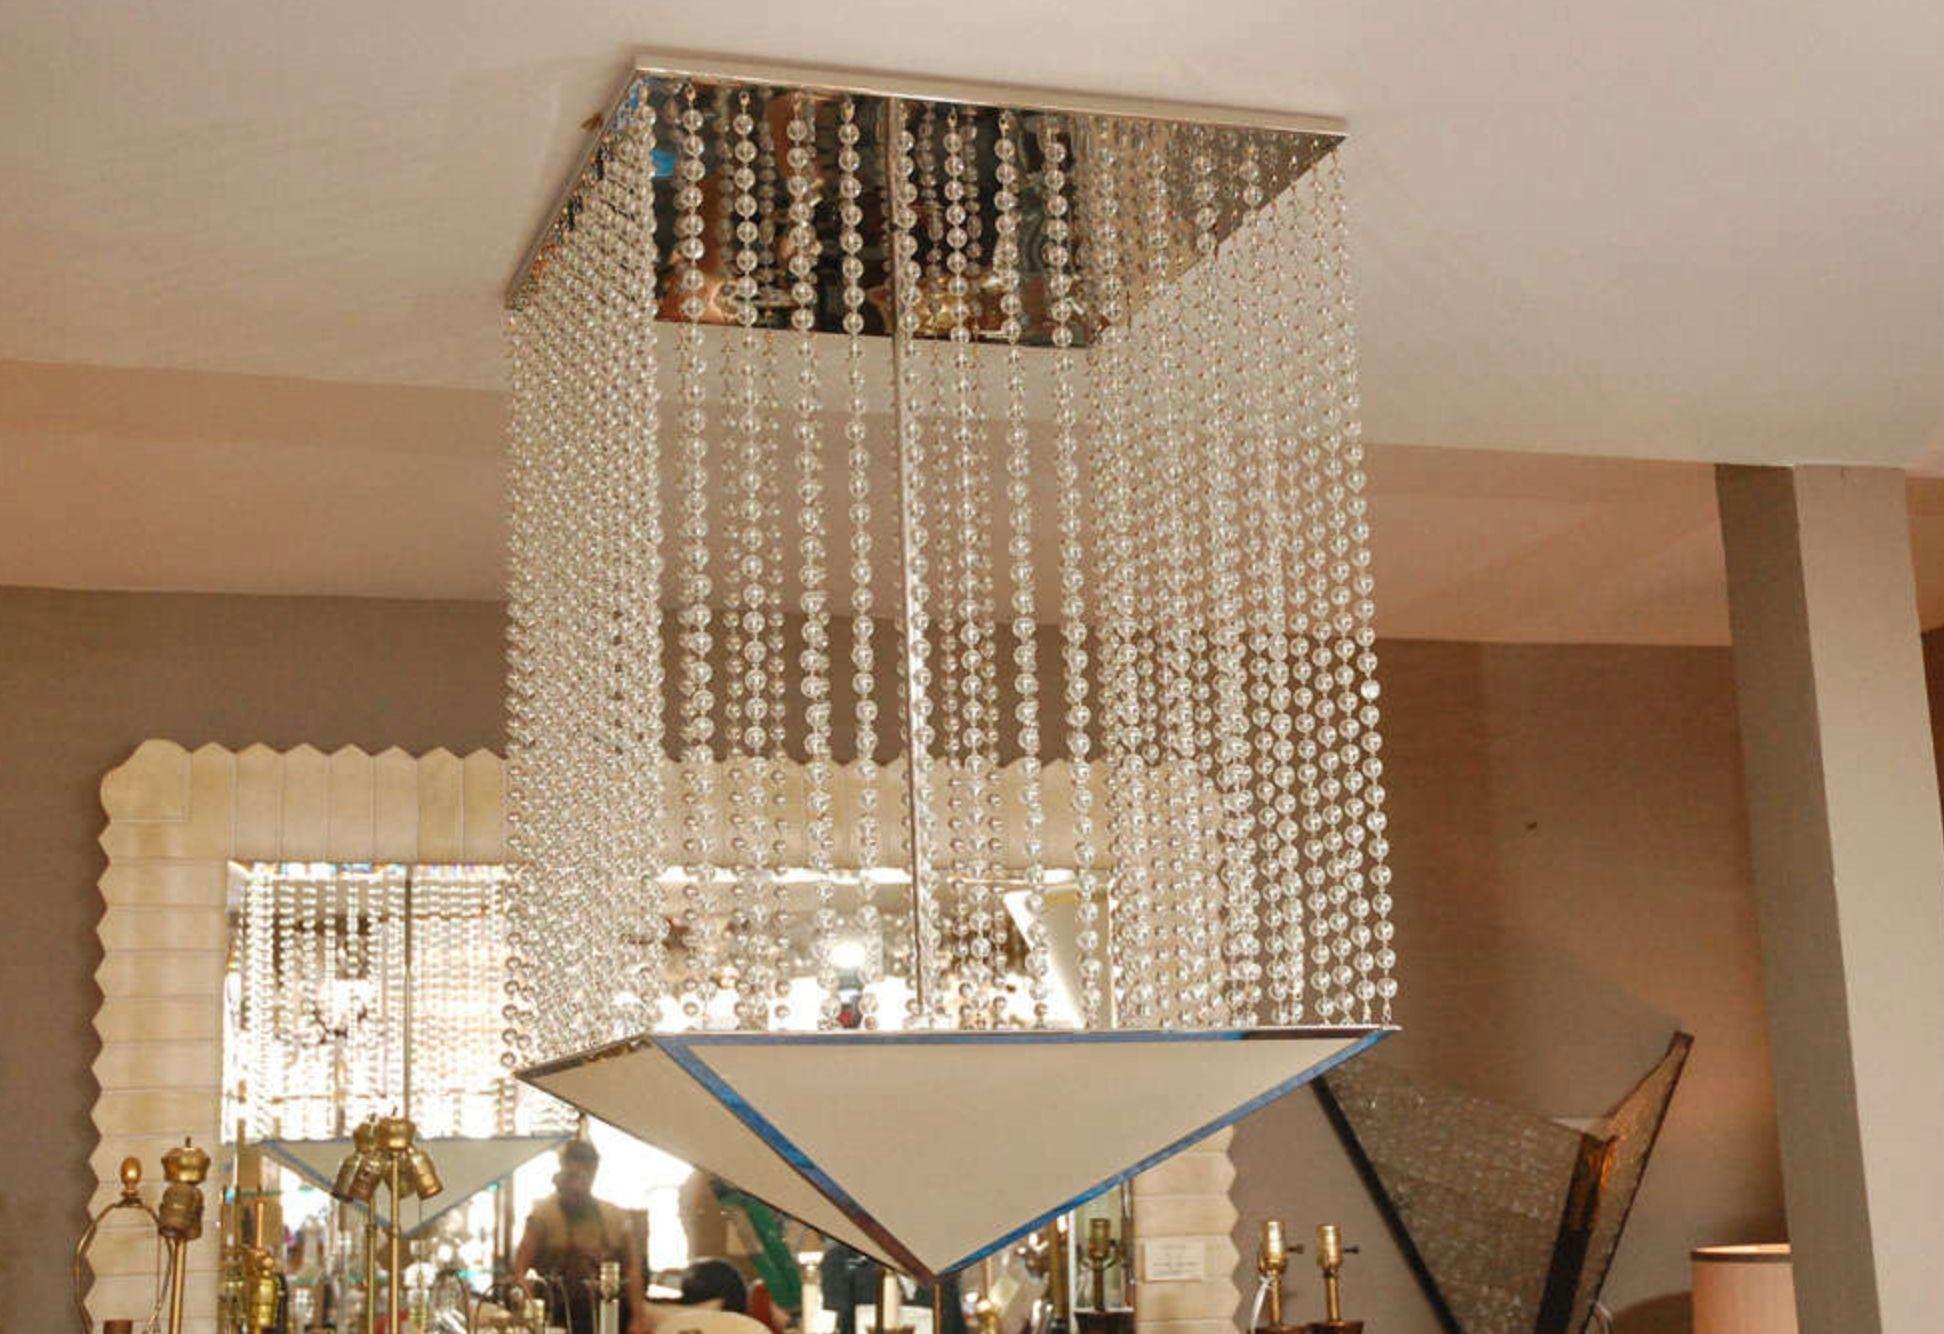 Il s'agit d'un prototype de lustre par Bryan Cox. Composé de perles de verre suspendues à une plaque de plafond en nickel. L'abat-jour est fait de lin rigide encadré de nickel.